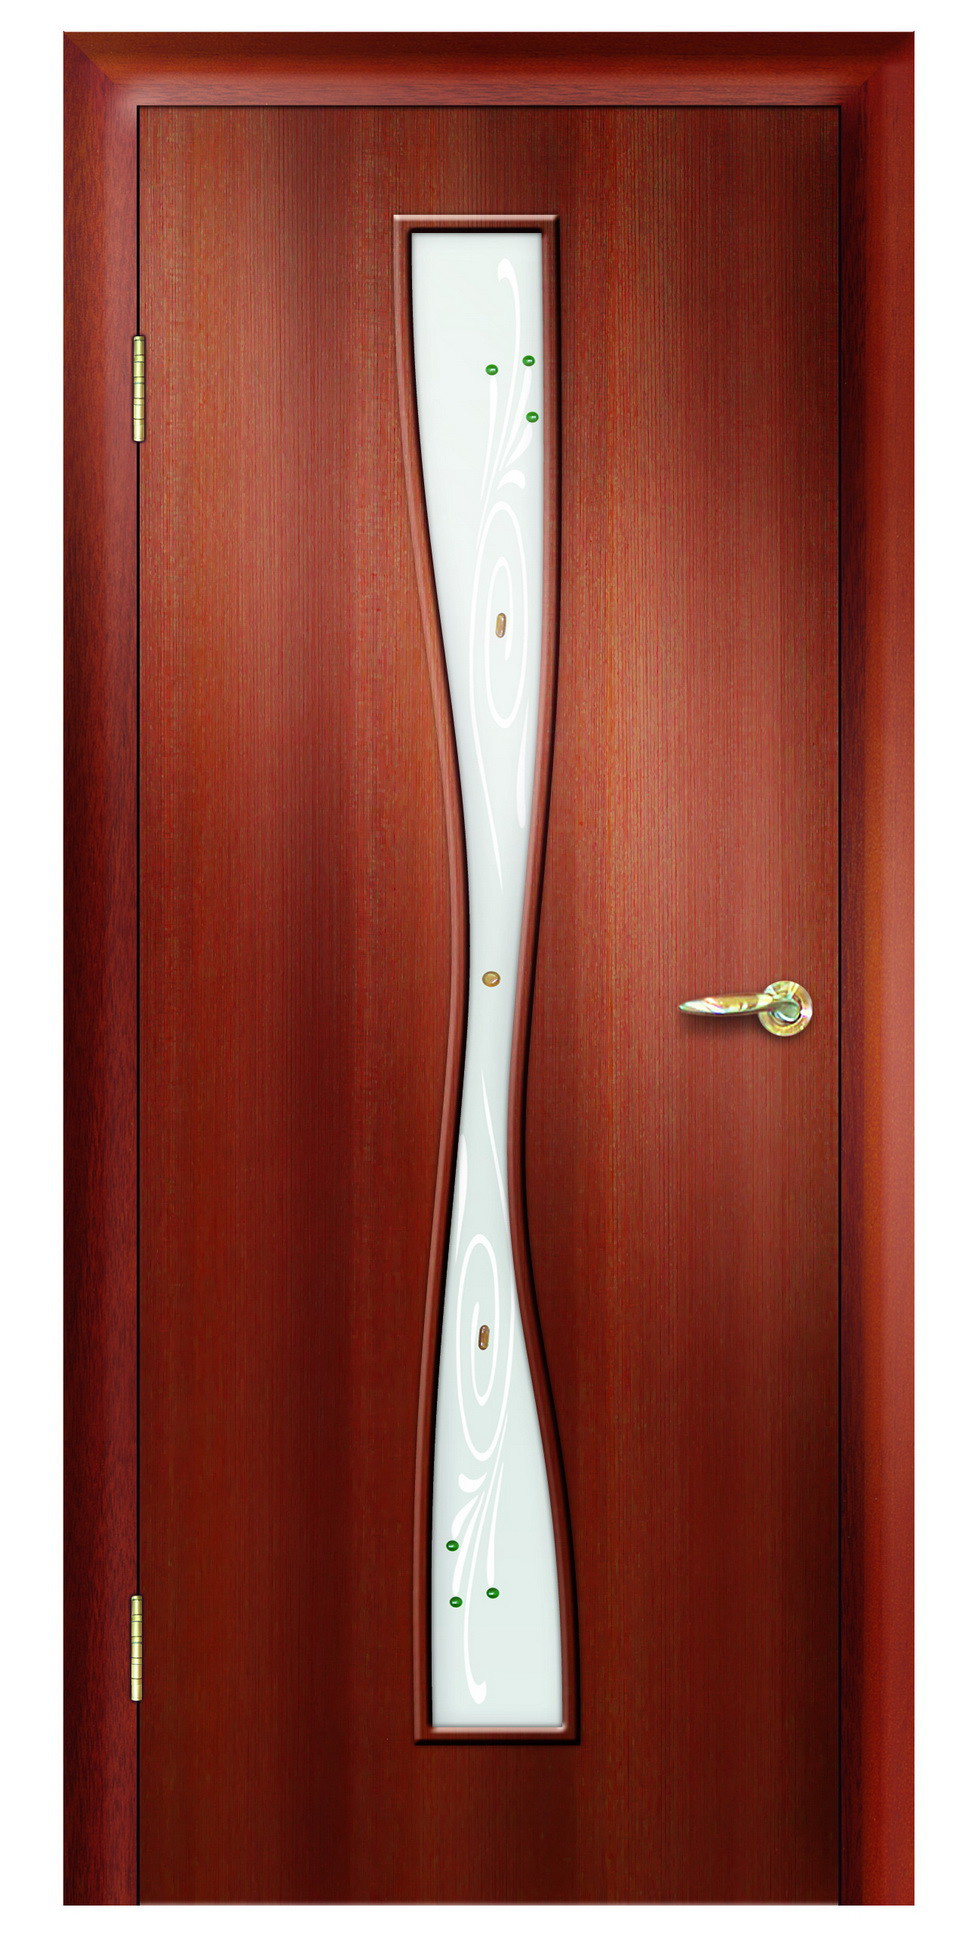 Дверная Линия Межкомнатная дверь ПО-24 Фьюзинг, арт. 15725 - фото №1